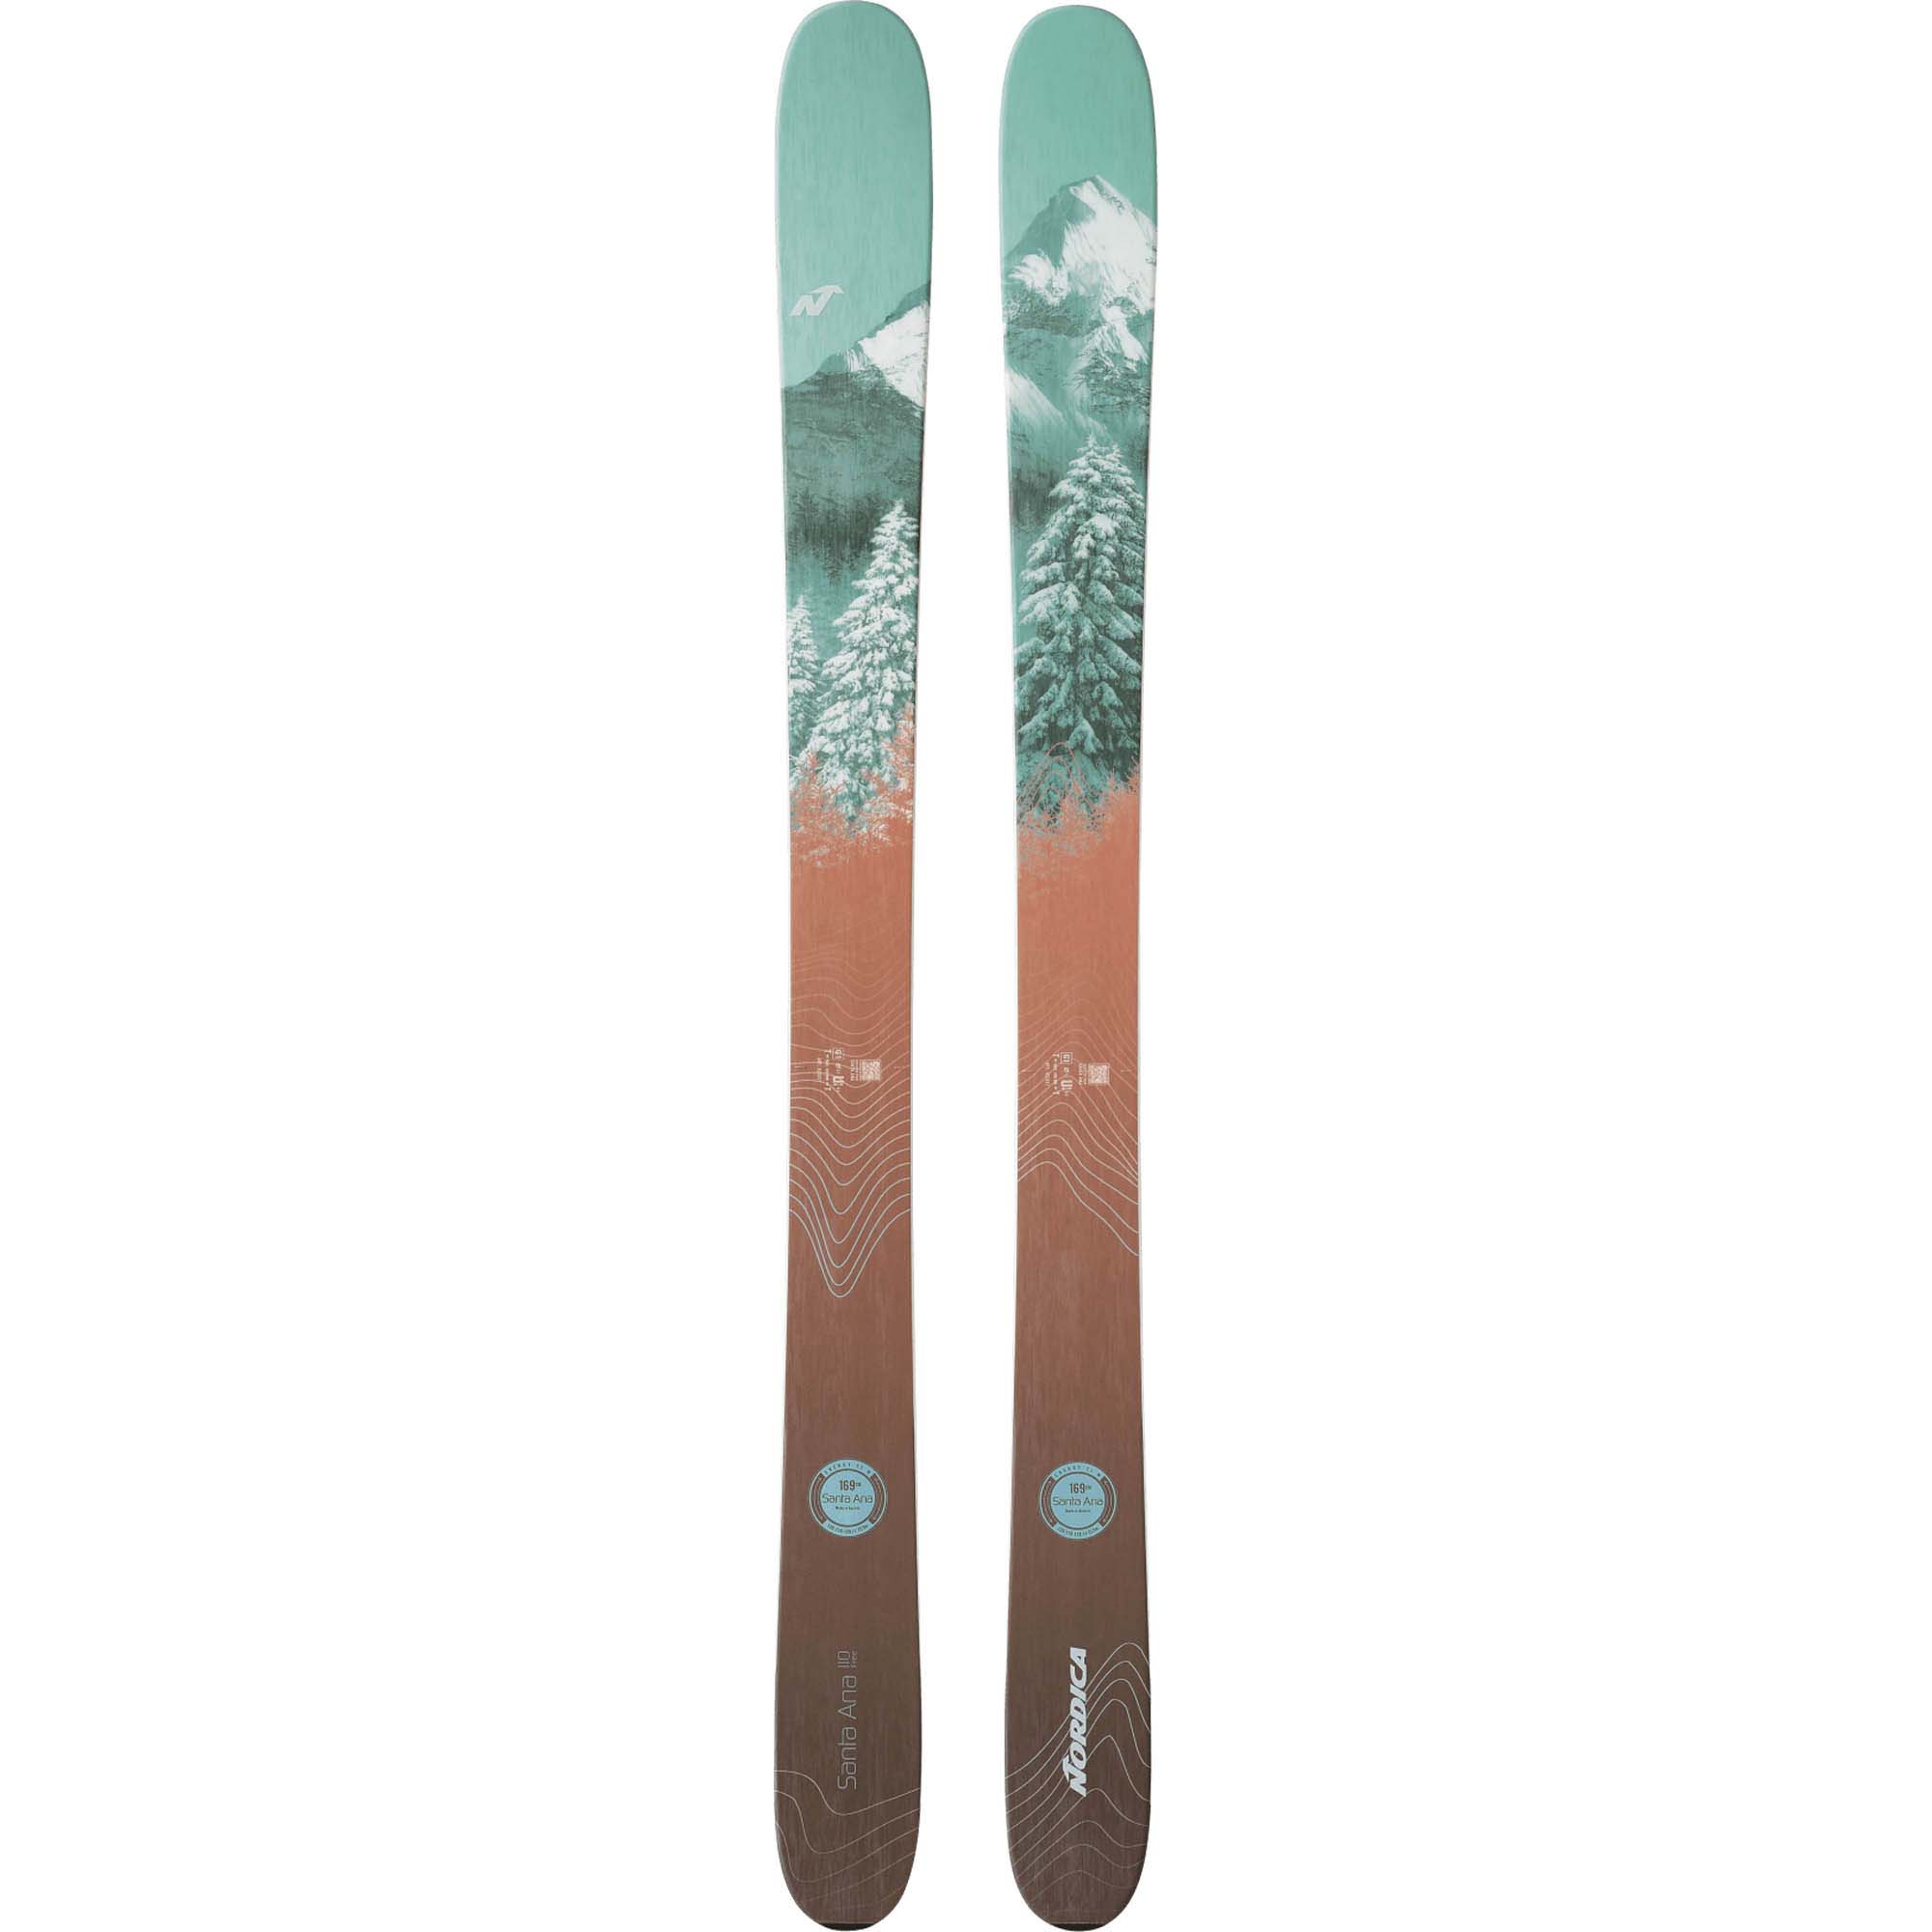 Nordica Santa Ana 110 Free Women's Skis